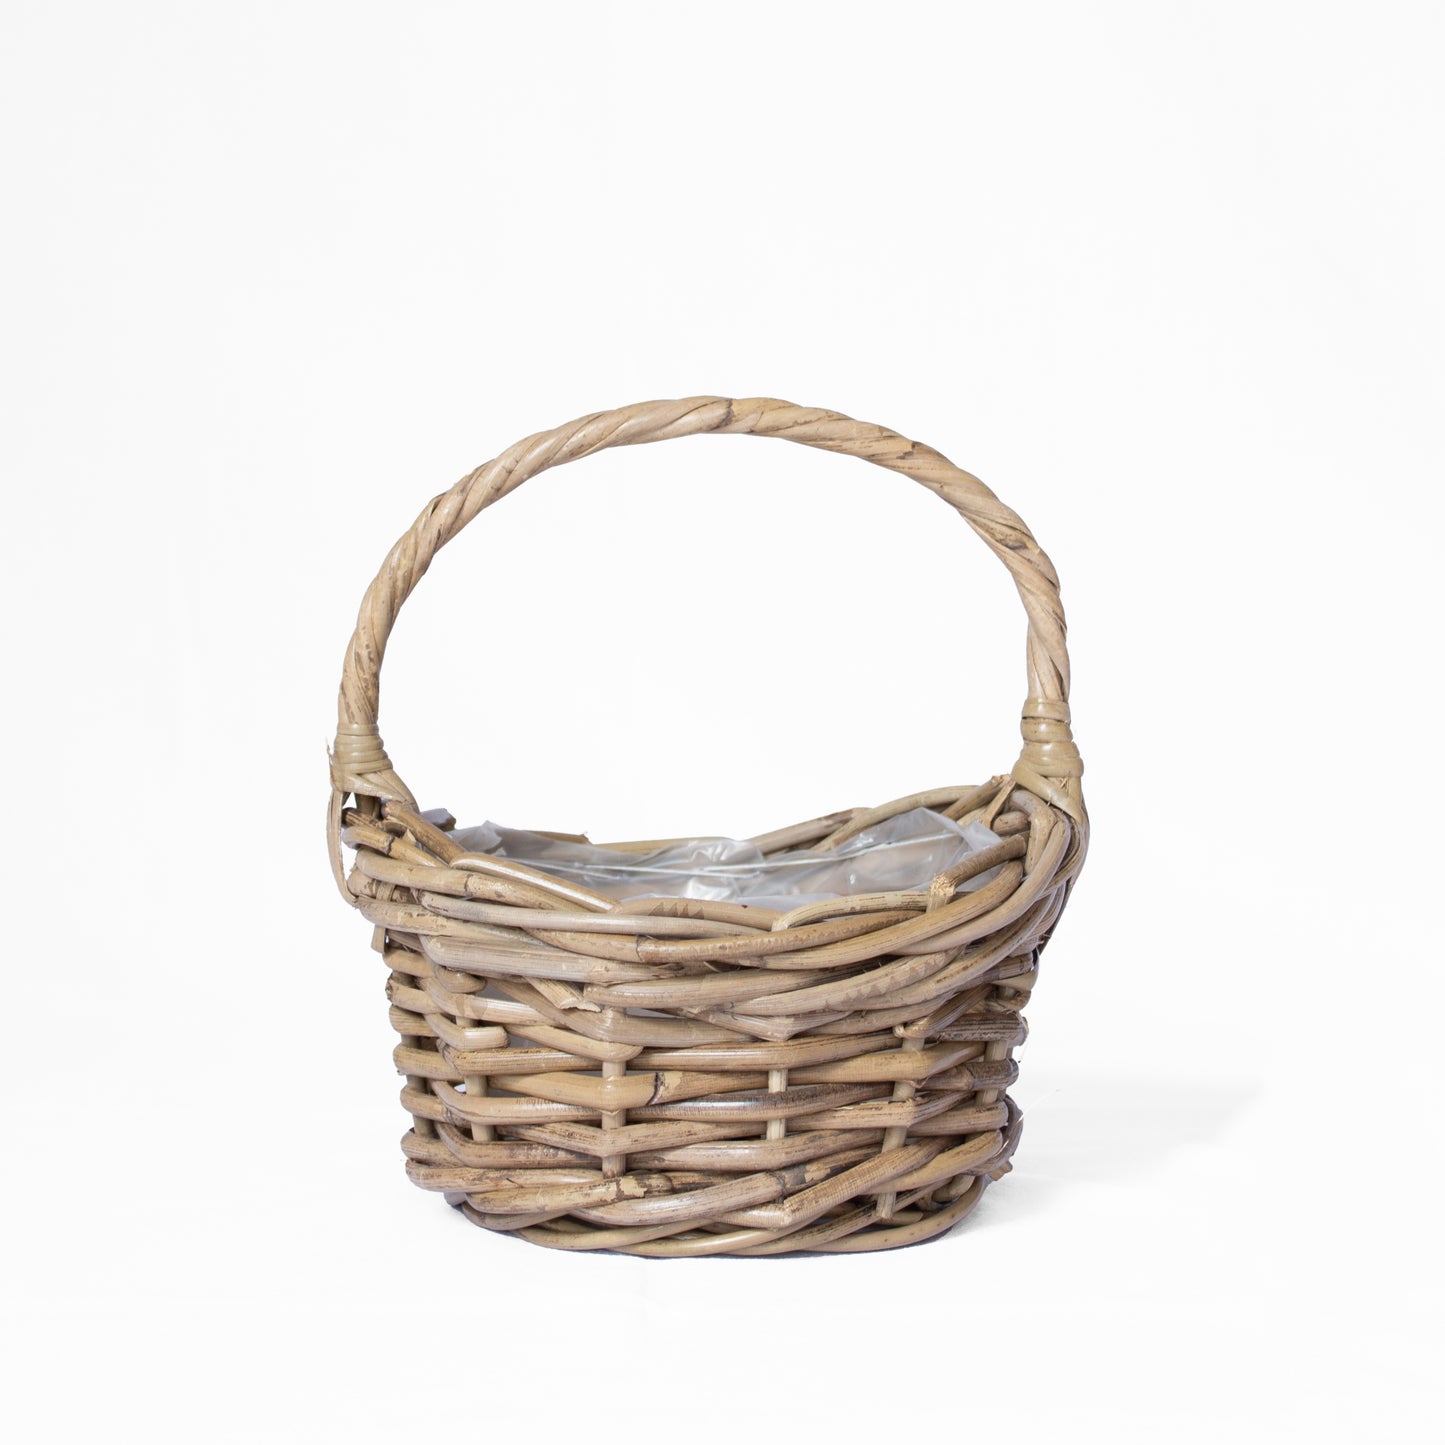 Flower Girl Basket